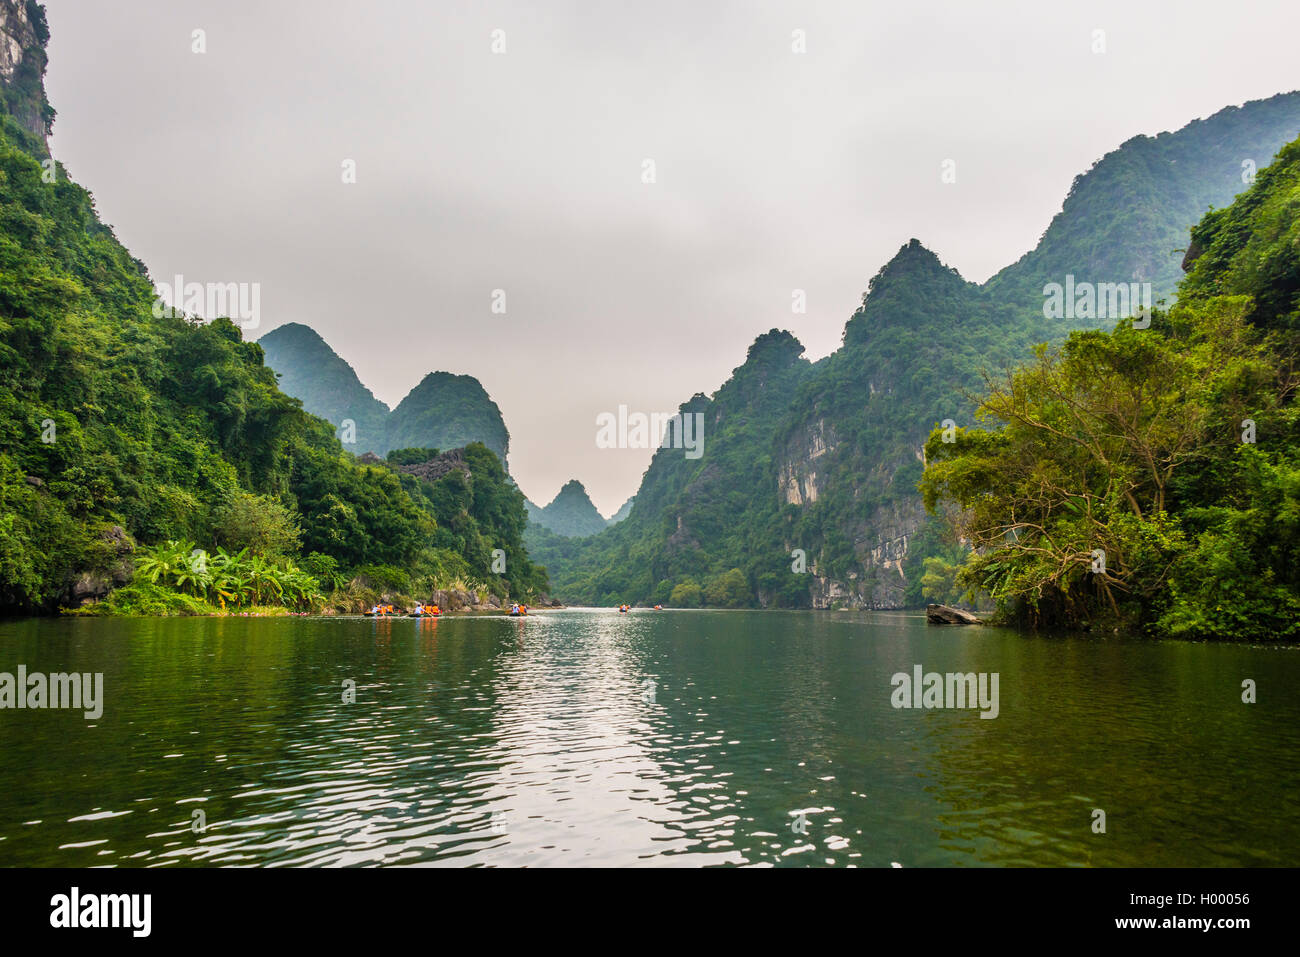 Trang grutas, un pintoresco paisaje, montañas karst karst, paisaje, riverscape, Quan thể danh Thắng Tràng An, Ninh Binh Foto de stock